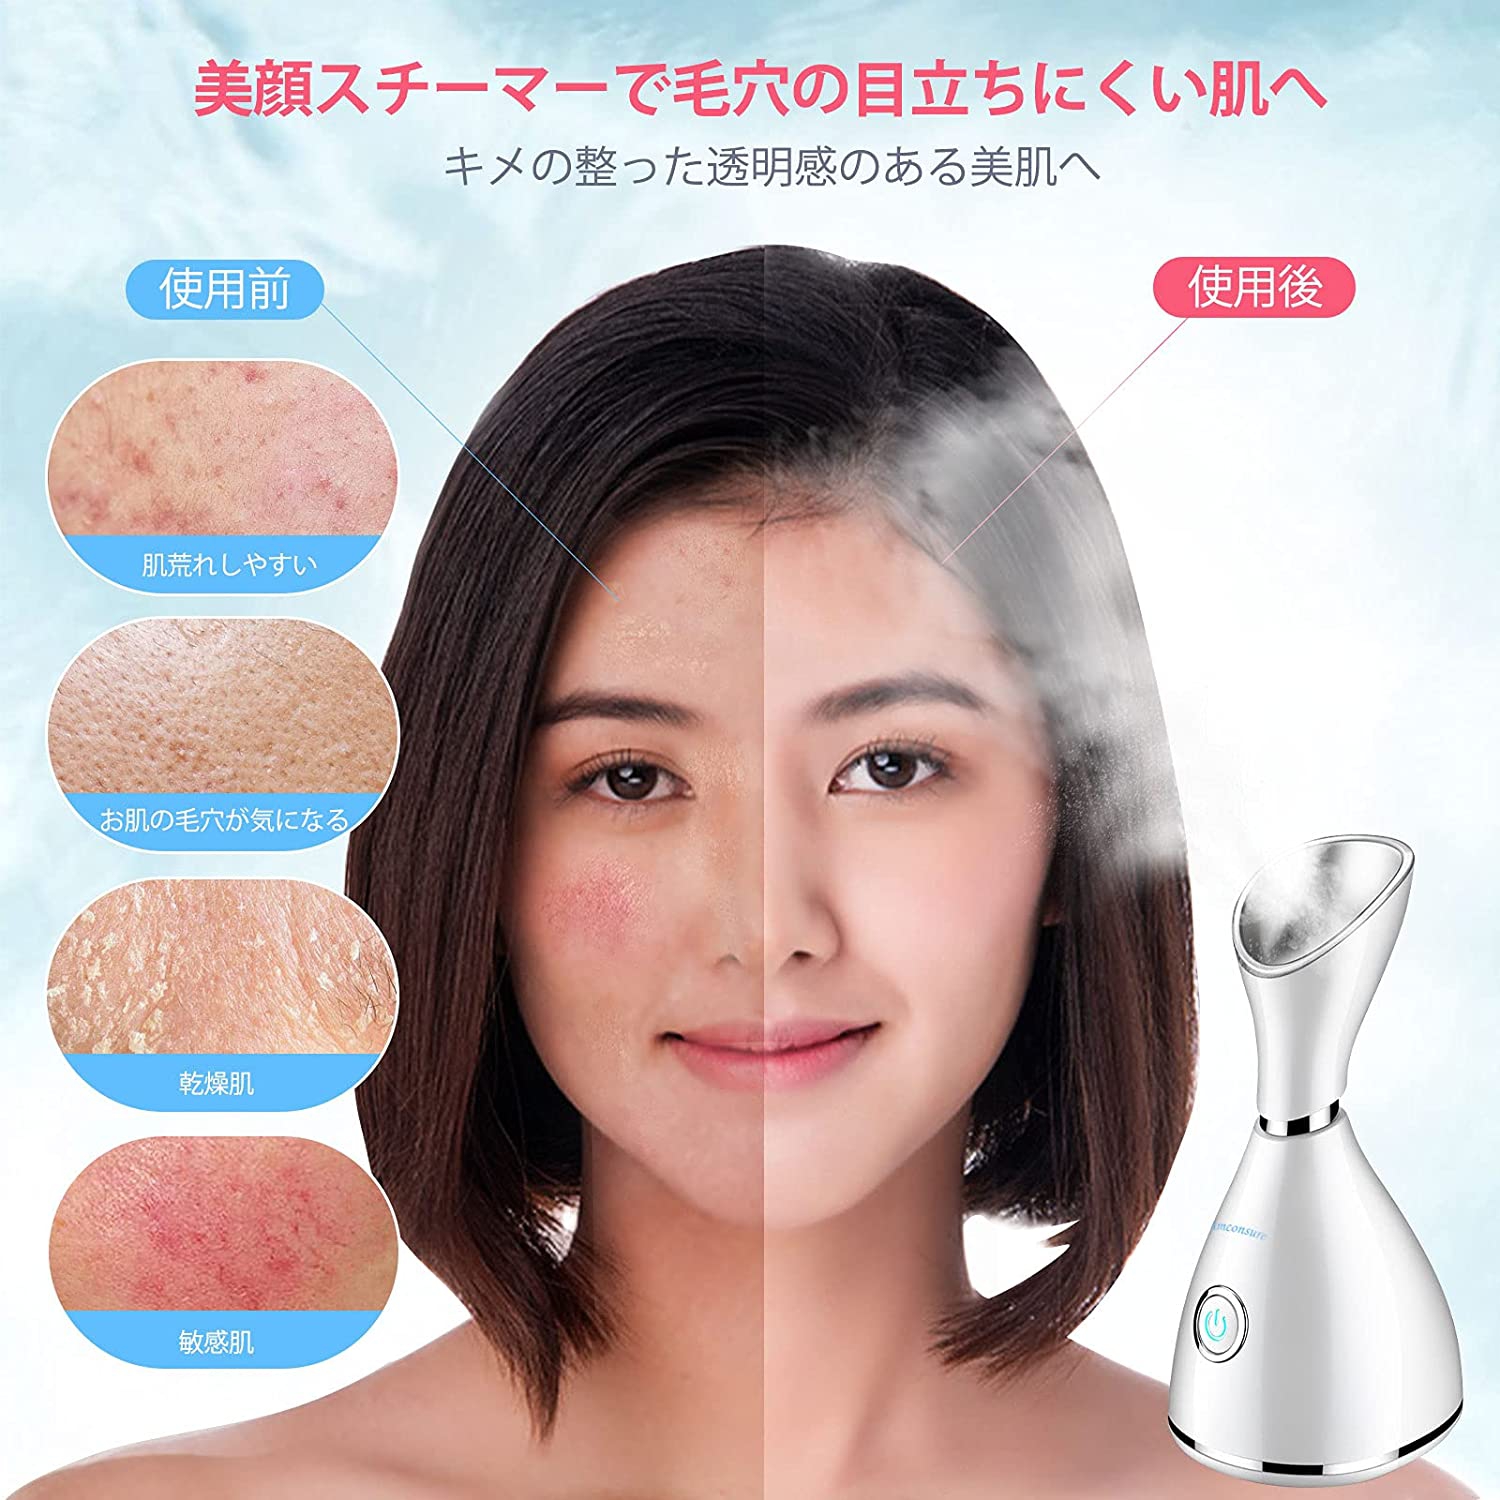 Amconsure(アンコンシュア) スチーム美顔器の商品画像5 